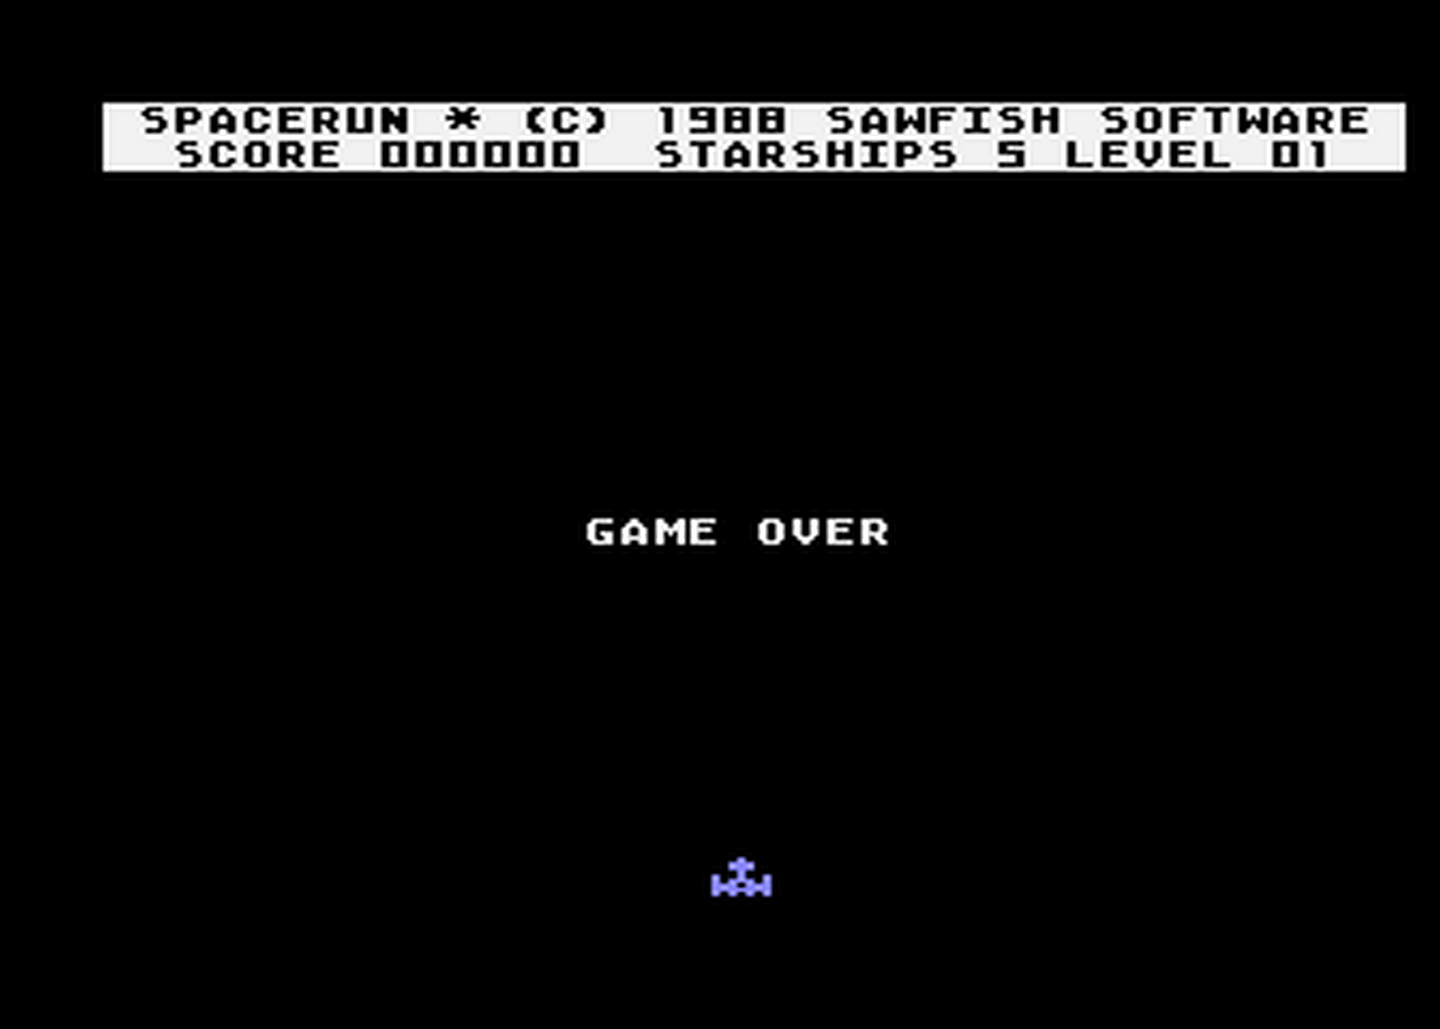 Atari GameBase Spacerun Sawfish_Software 1988